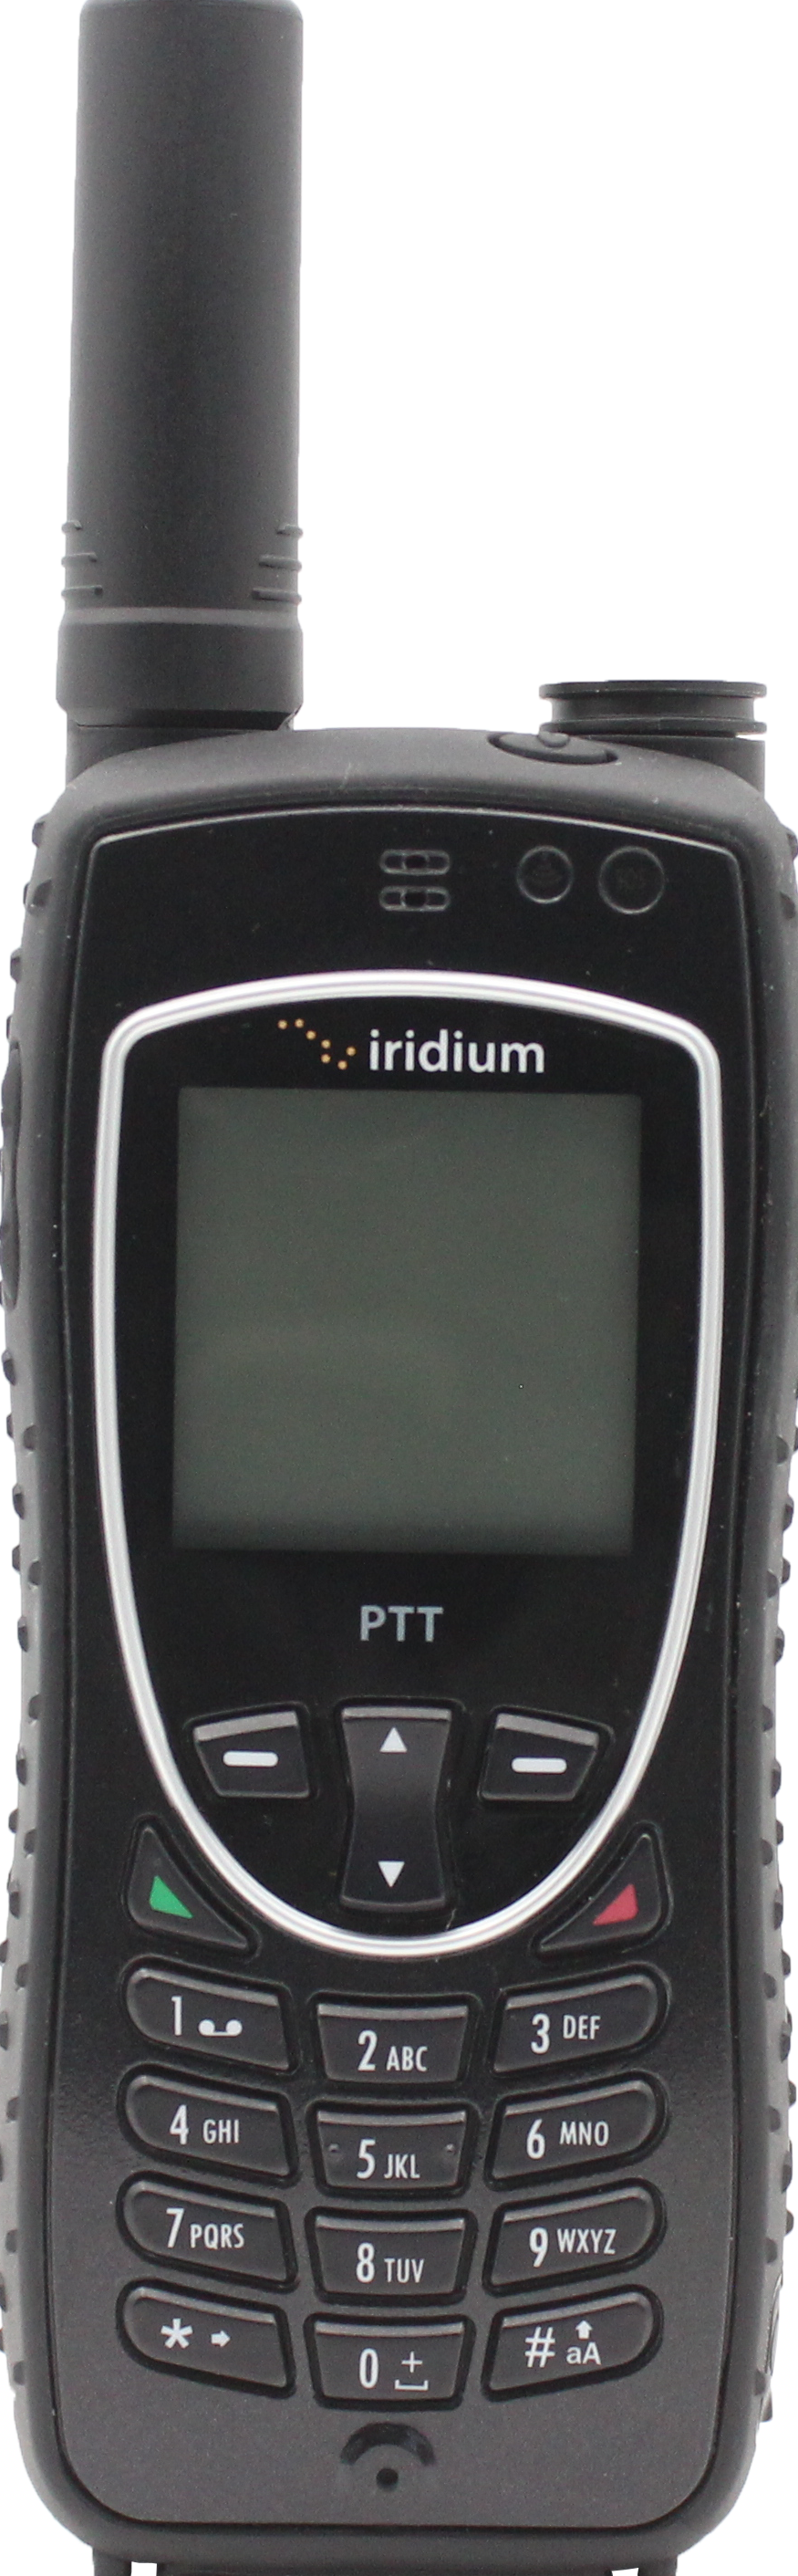 Iridium 9575 PTT - POA